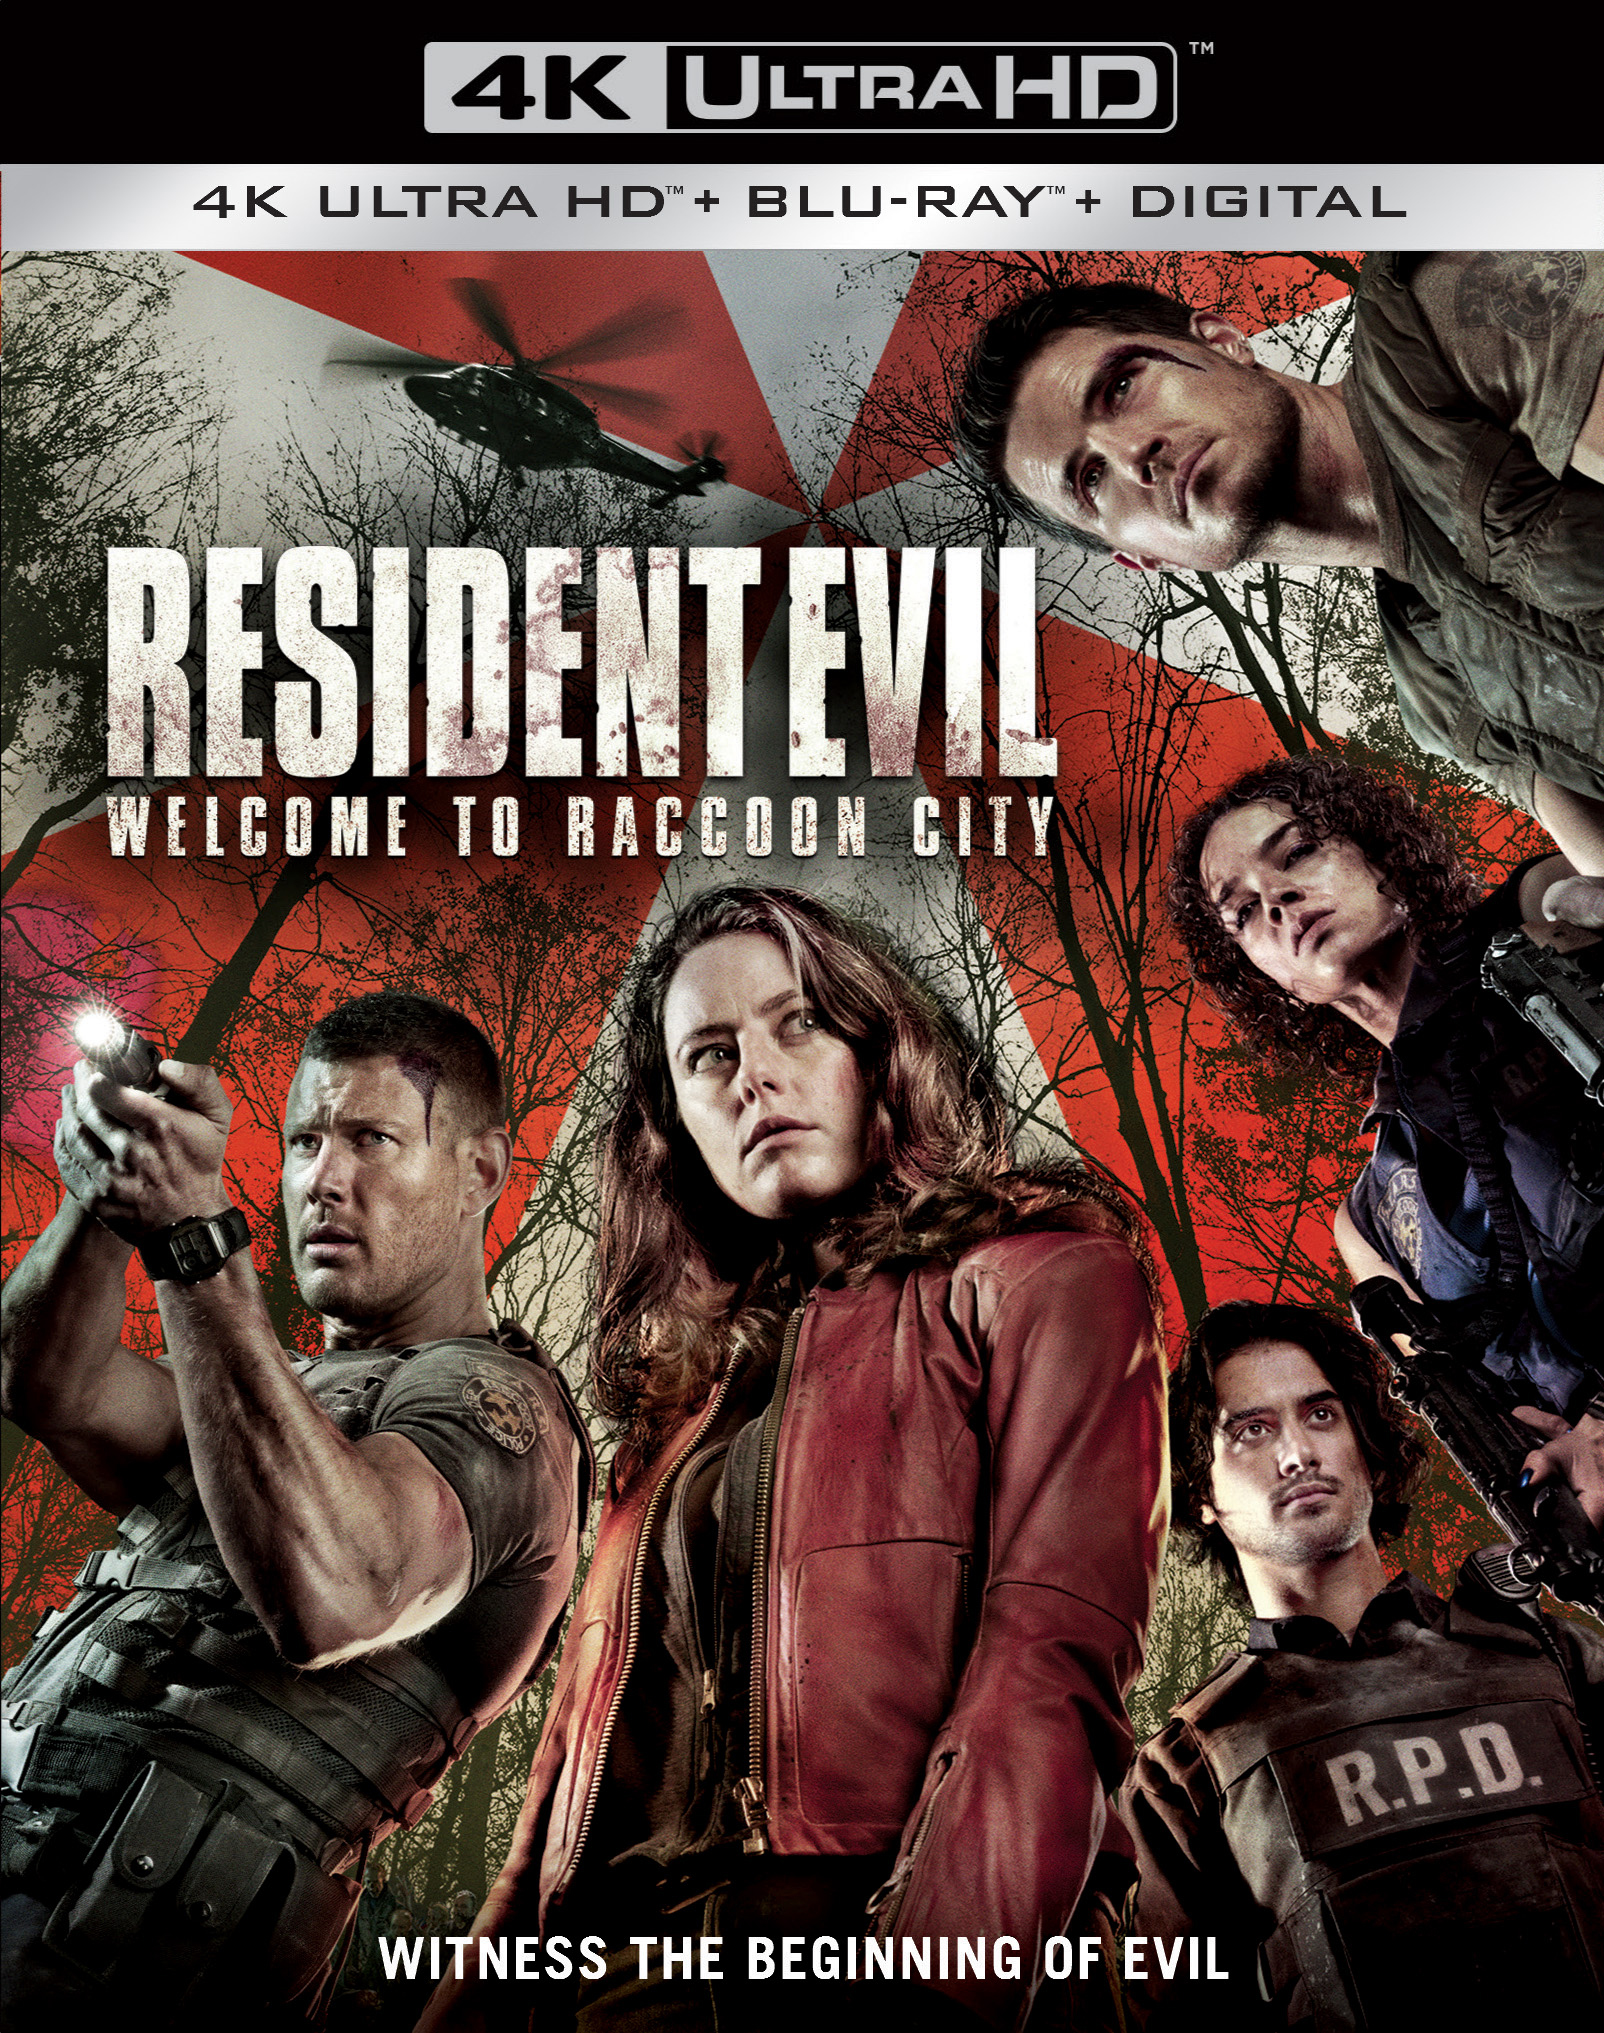 Resident Evil: Death Island será lançado em formato digital, DVD e